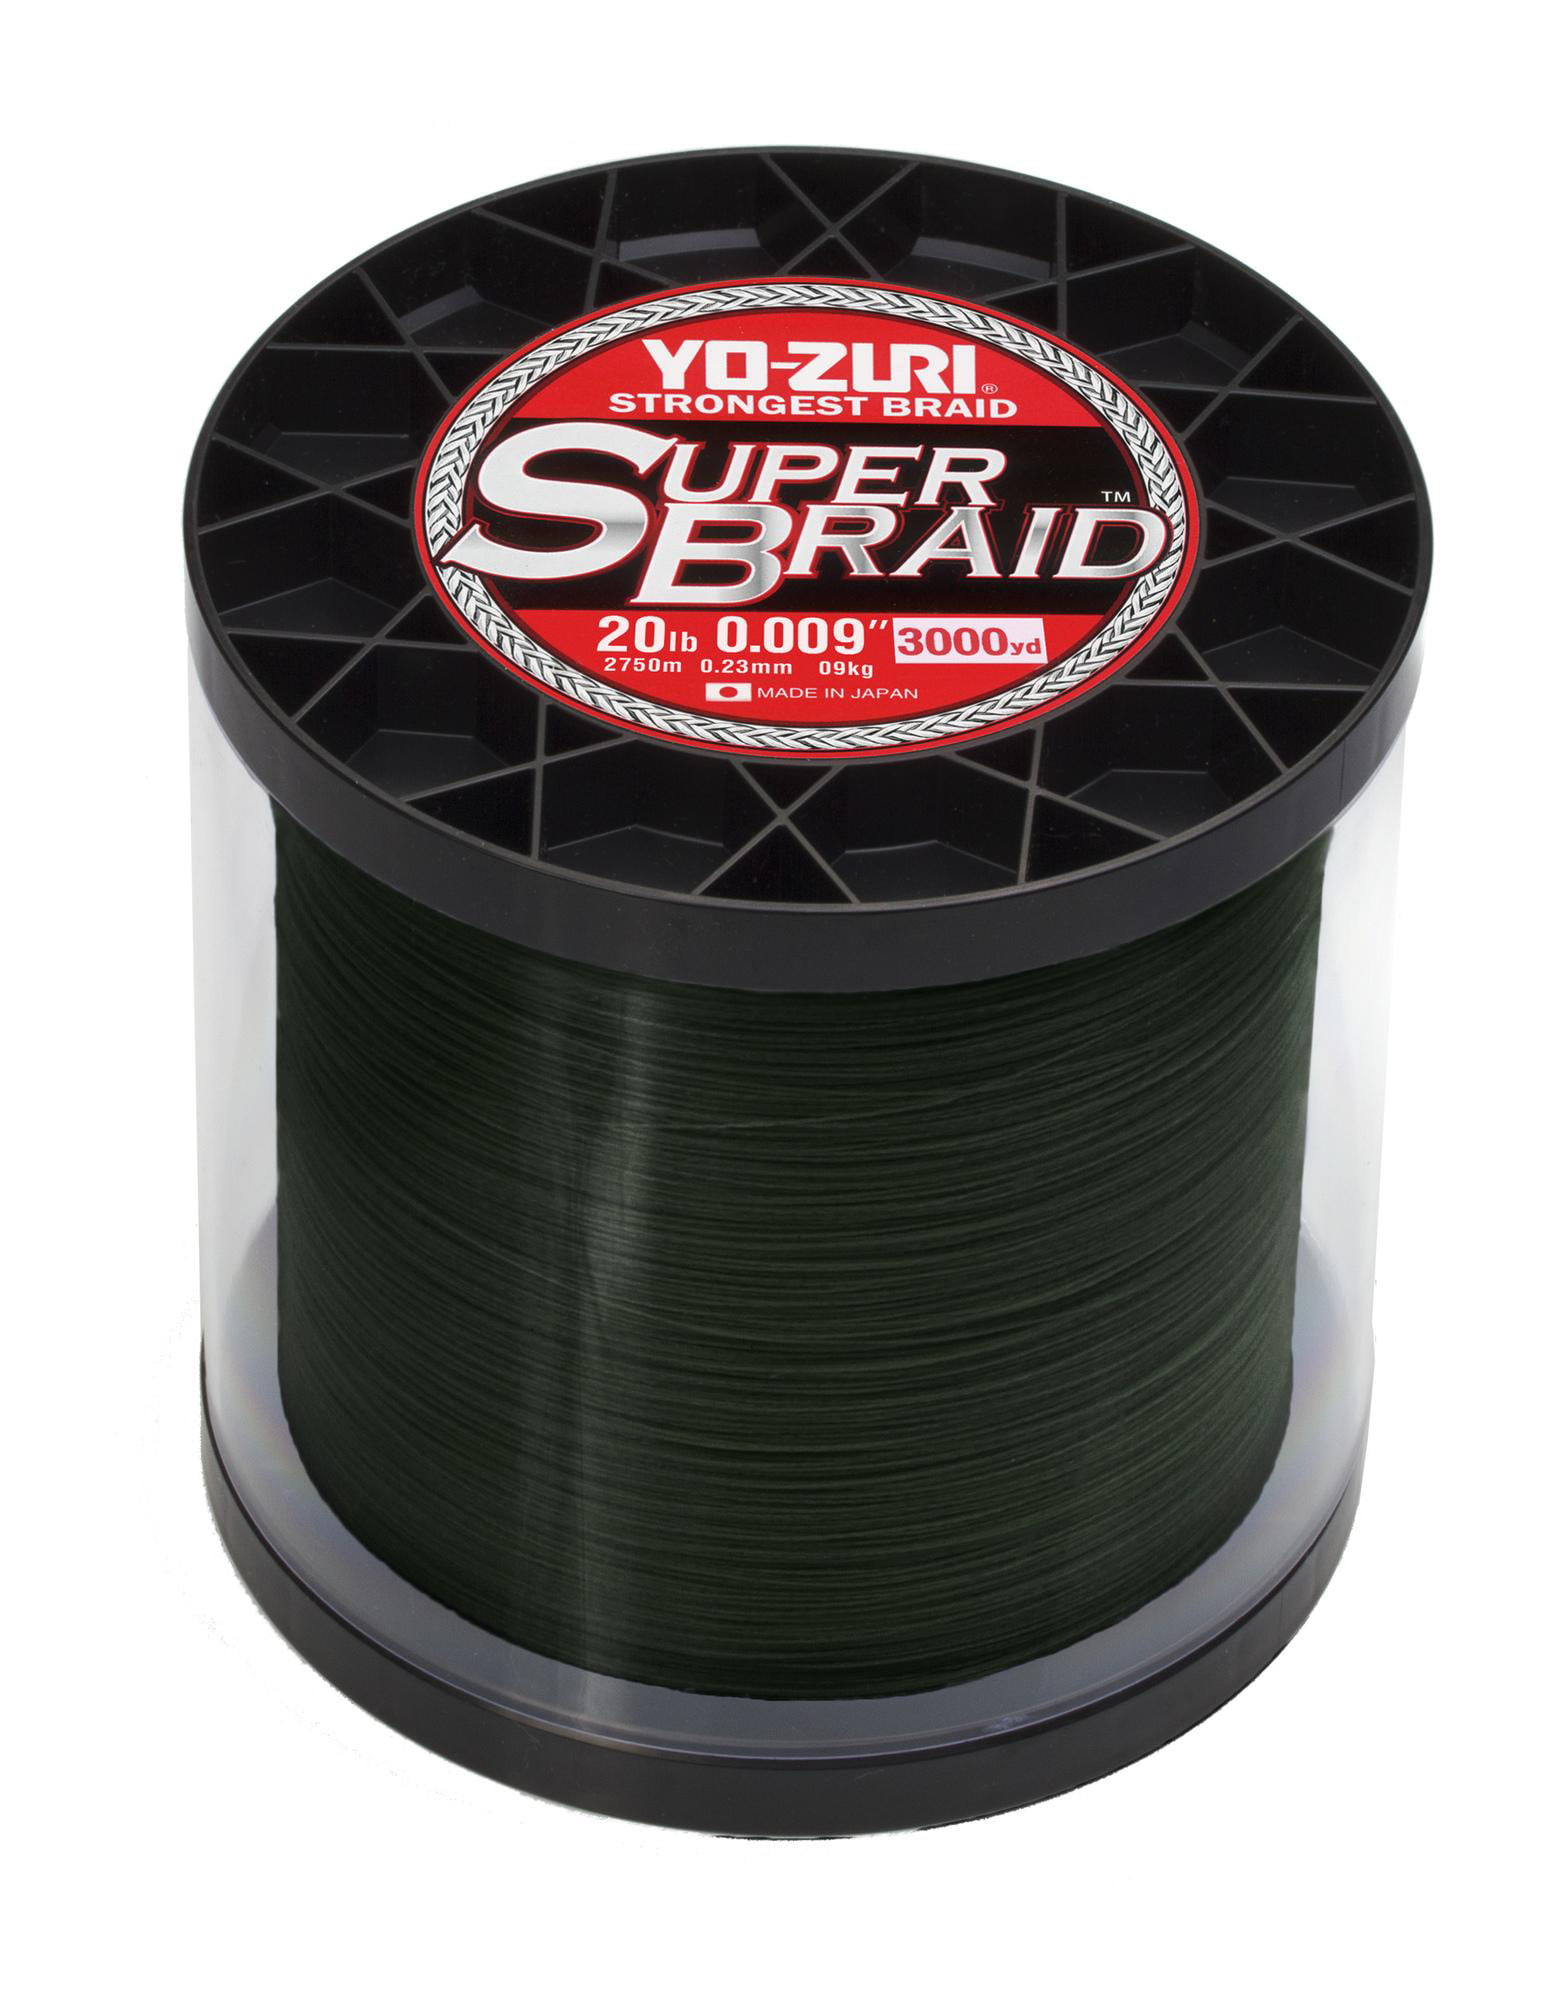 Yo-Zuri SuperBraid Braided Line, 20lb, 3000yd, Dark Green